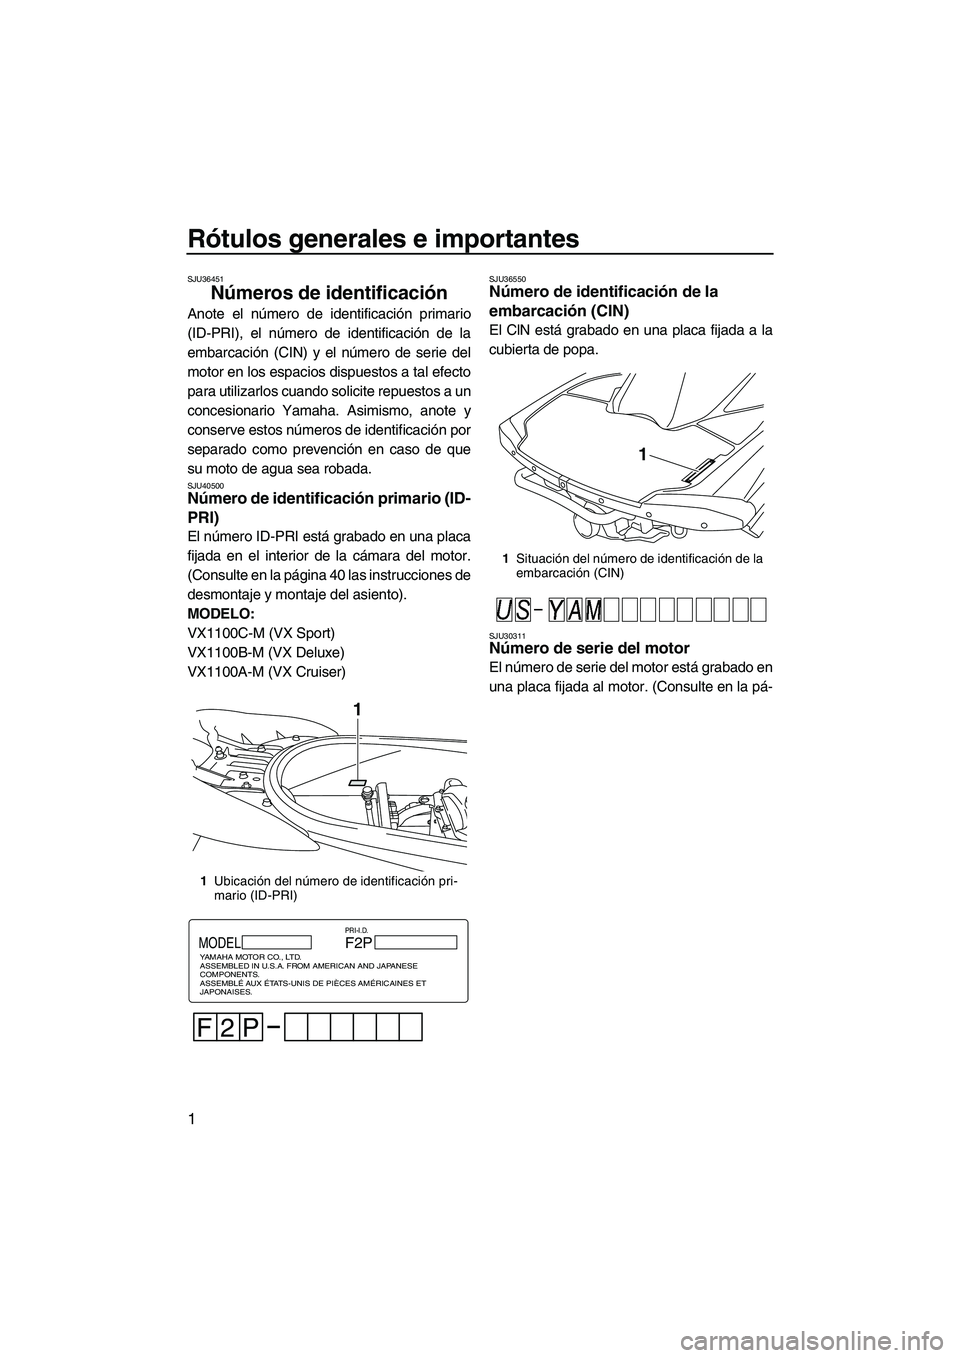 YAMAHA VX DELUXE 2013  Manuale de Empleo (in Spanish) Rótulos generales e importantes
1
SJU36451
Números de identificación 
Anote el número de identificación primario
(ID-PRI), el número de identificación de la
embarcación (CIN) y el número de s